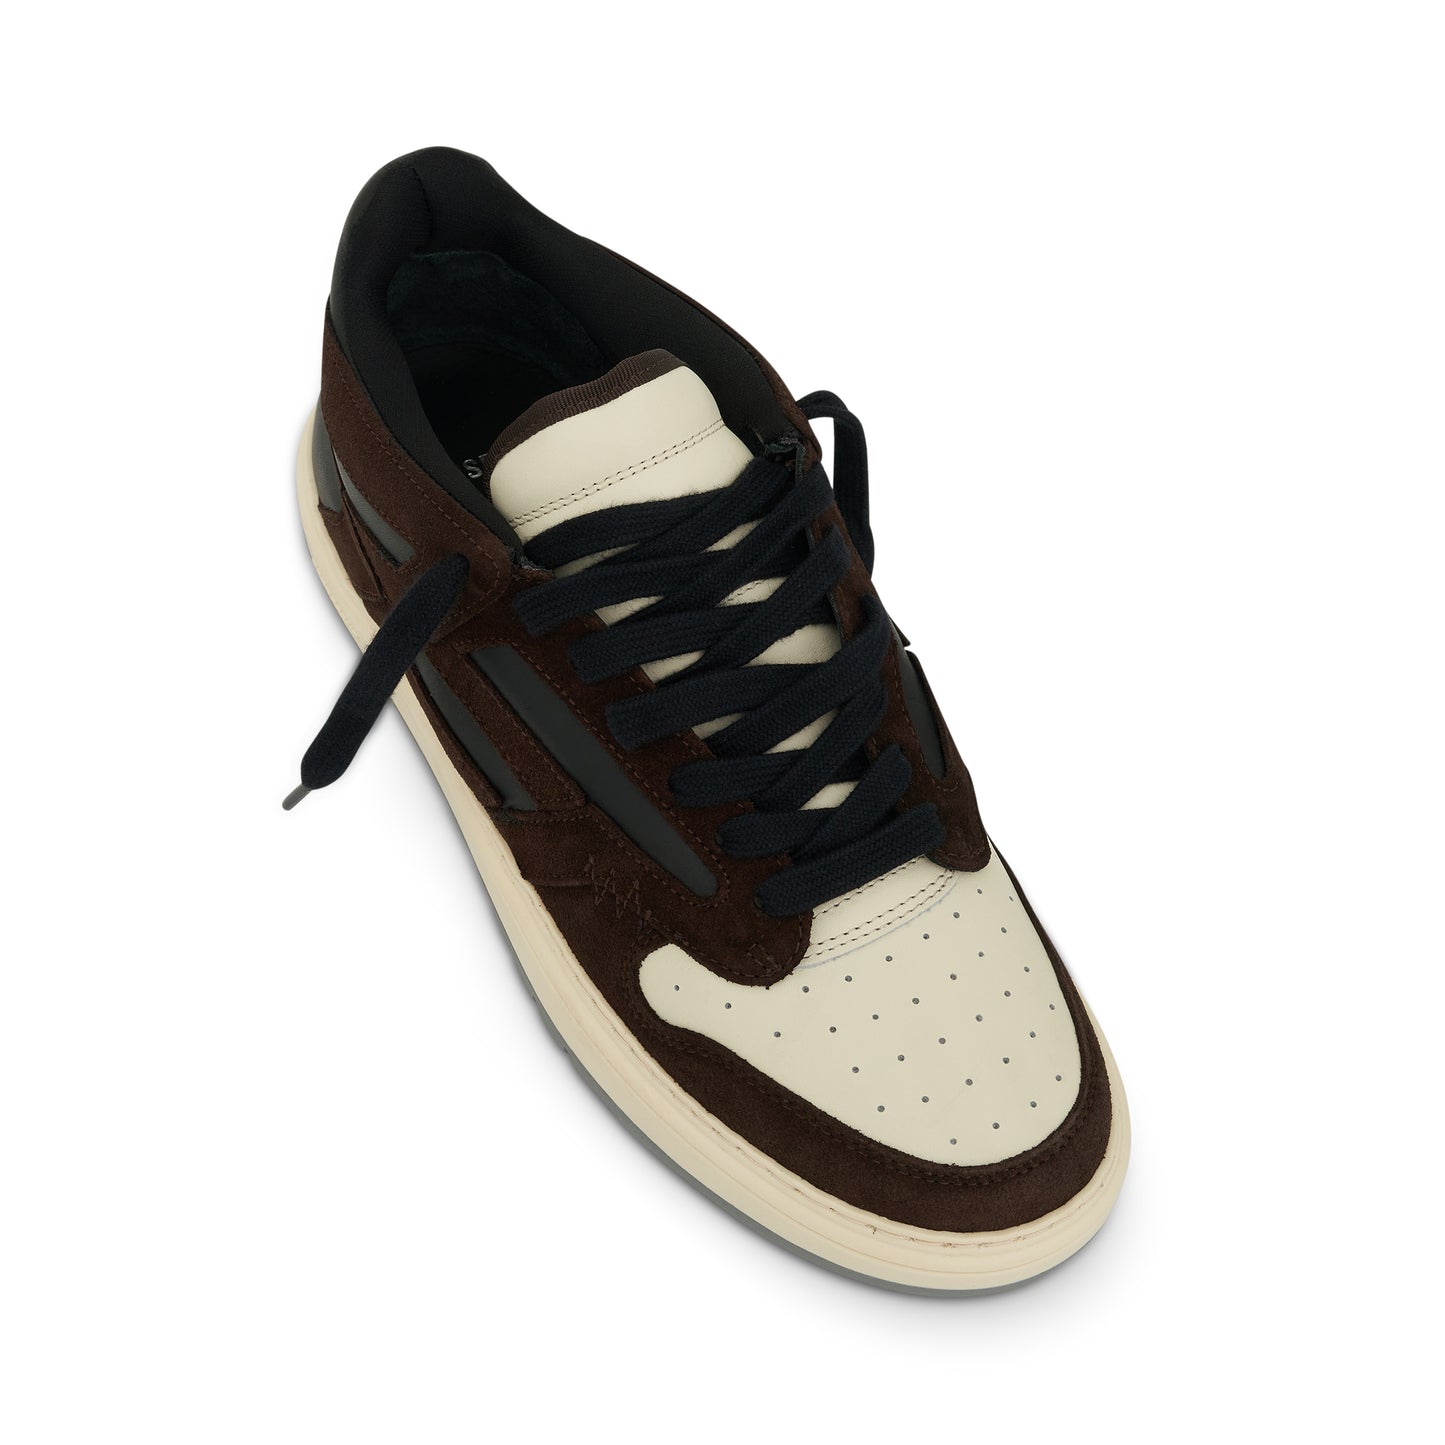 Reptor Low Sneaker in Brown/Black